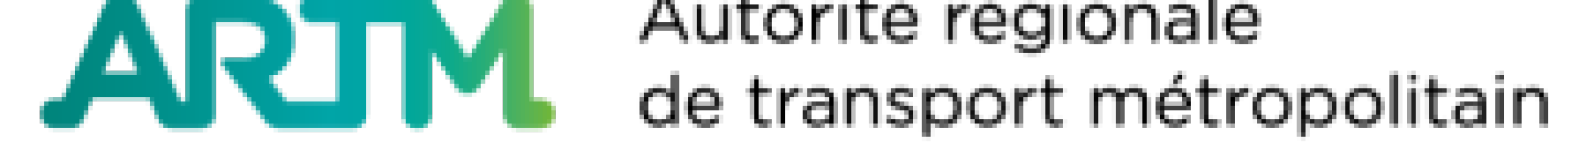 Autorité régionale de transport métropolitain logo